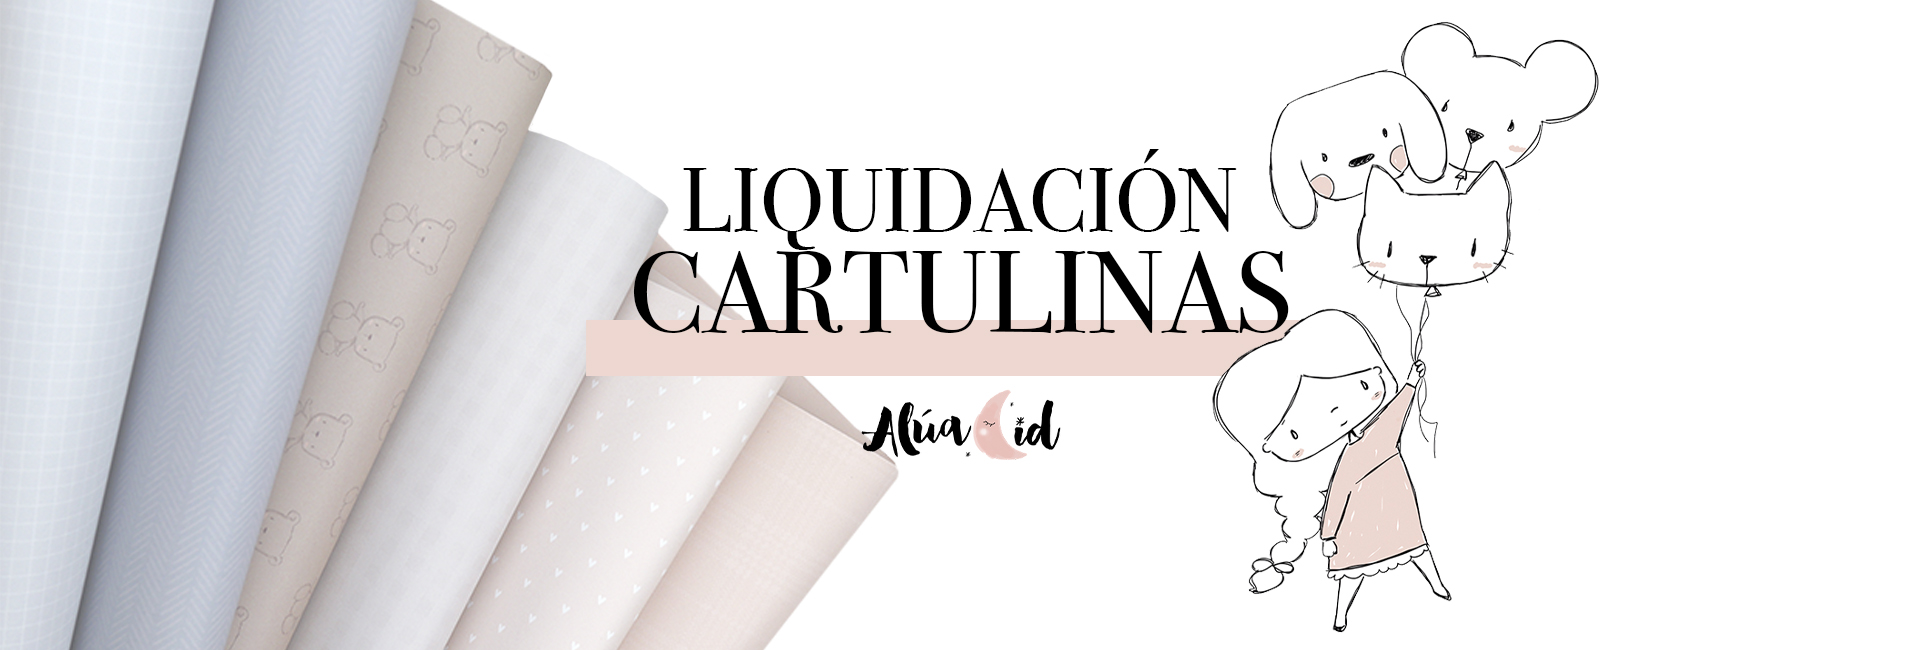 SLIDE_liquidacion cartulinas